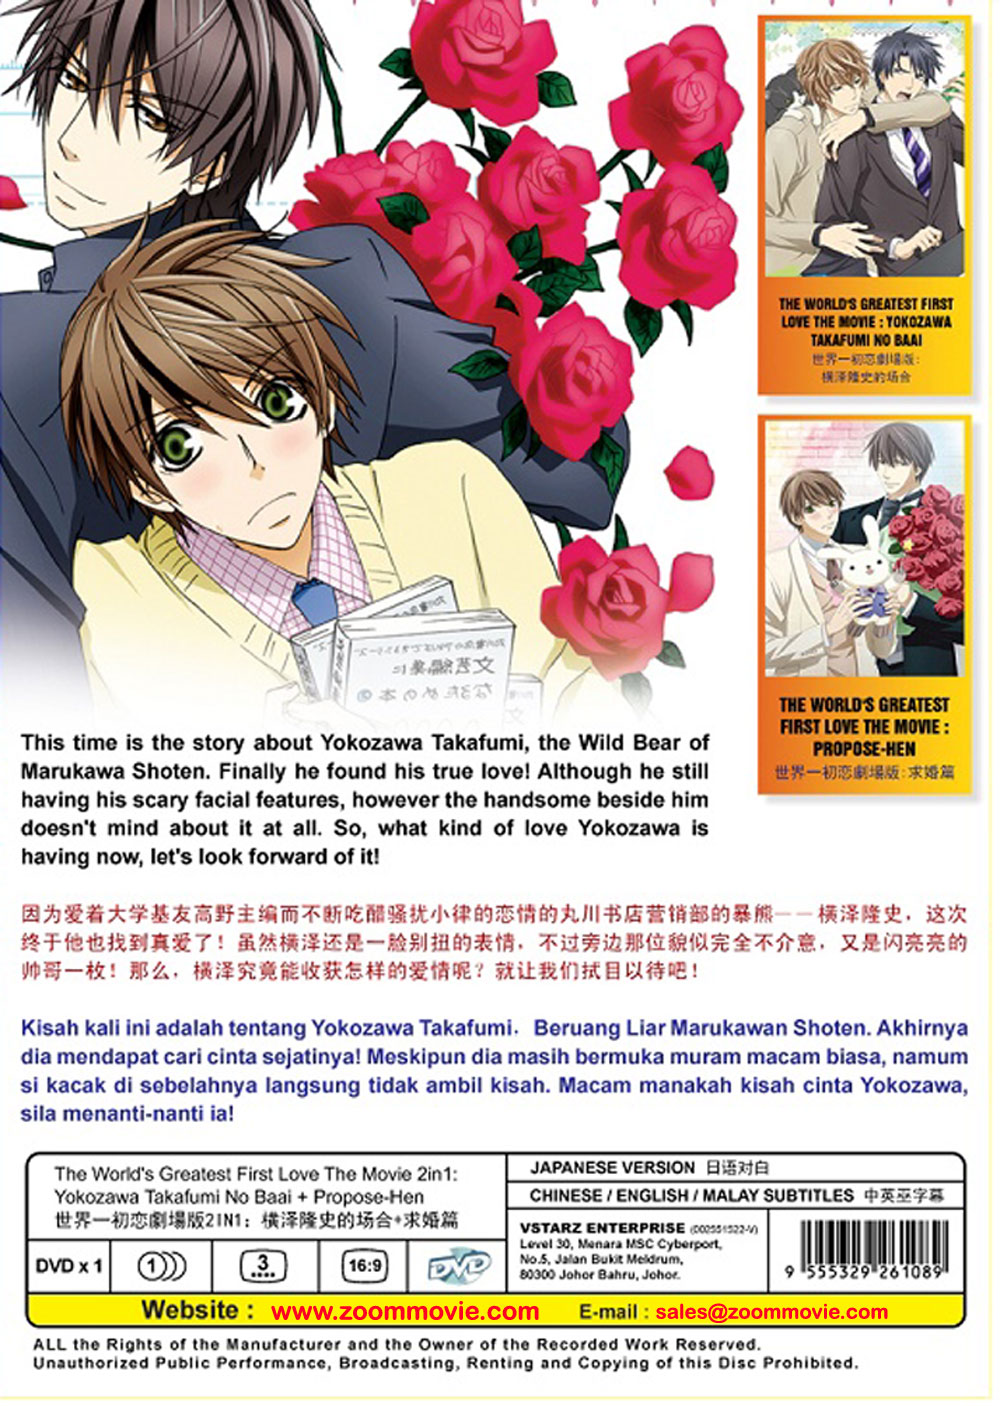 Can Badge [The World`s Greatest First Love -Proposal Arc-] 04 Zen Kirishima  & Takafumi Yokozawa (Anime Toy) - HobbySearch Anime Goods Store